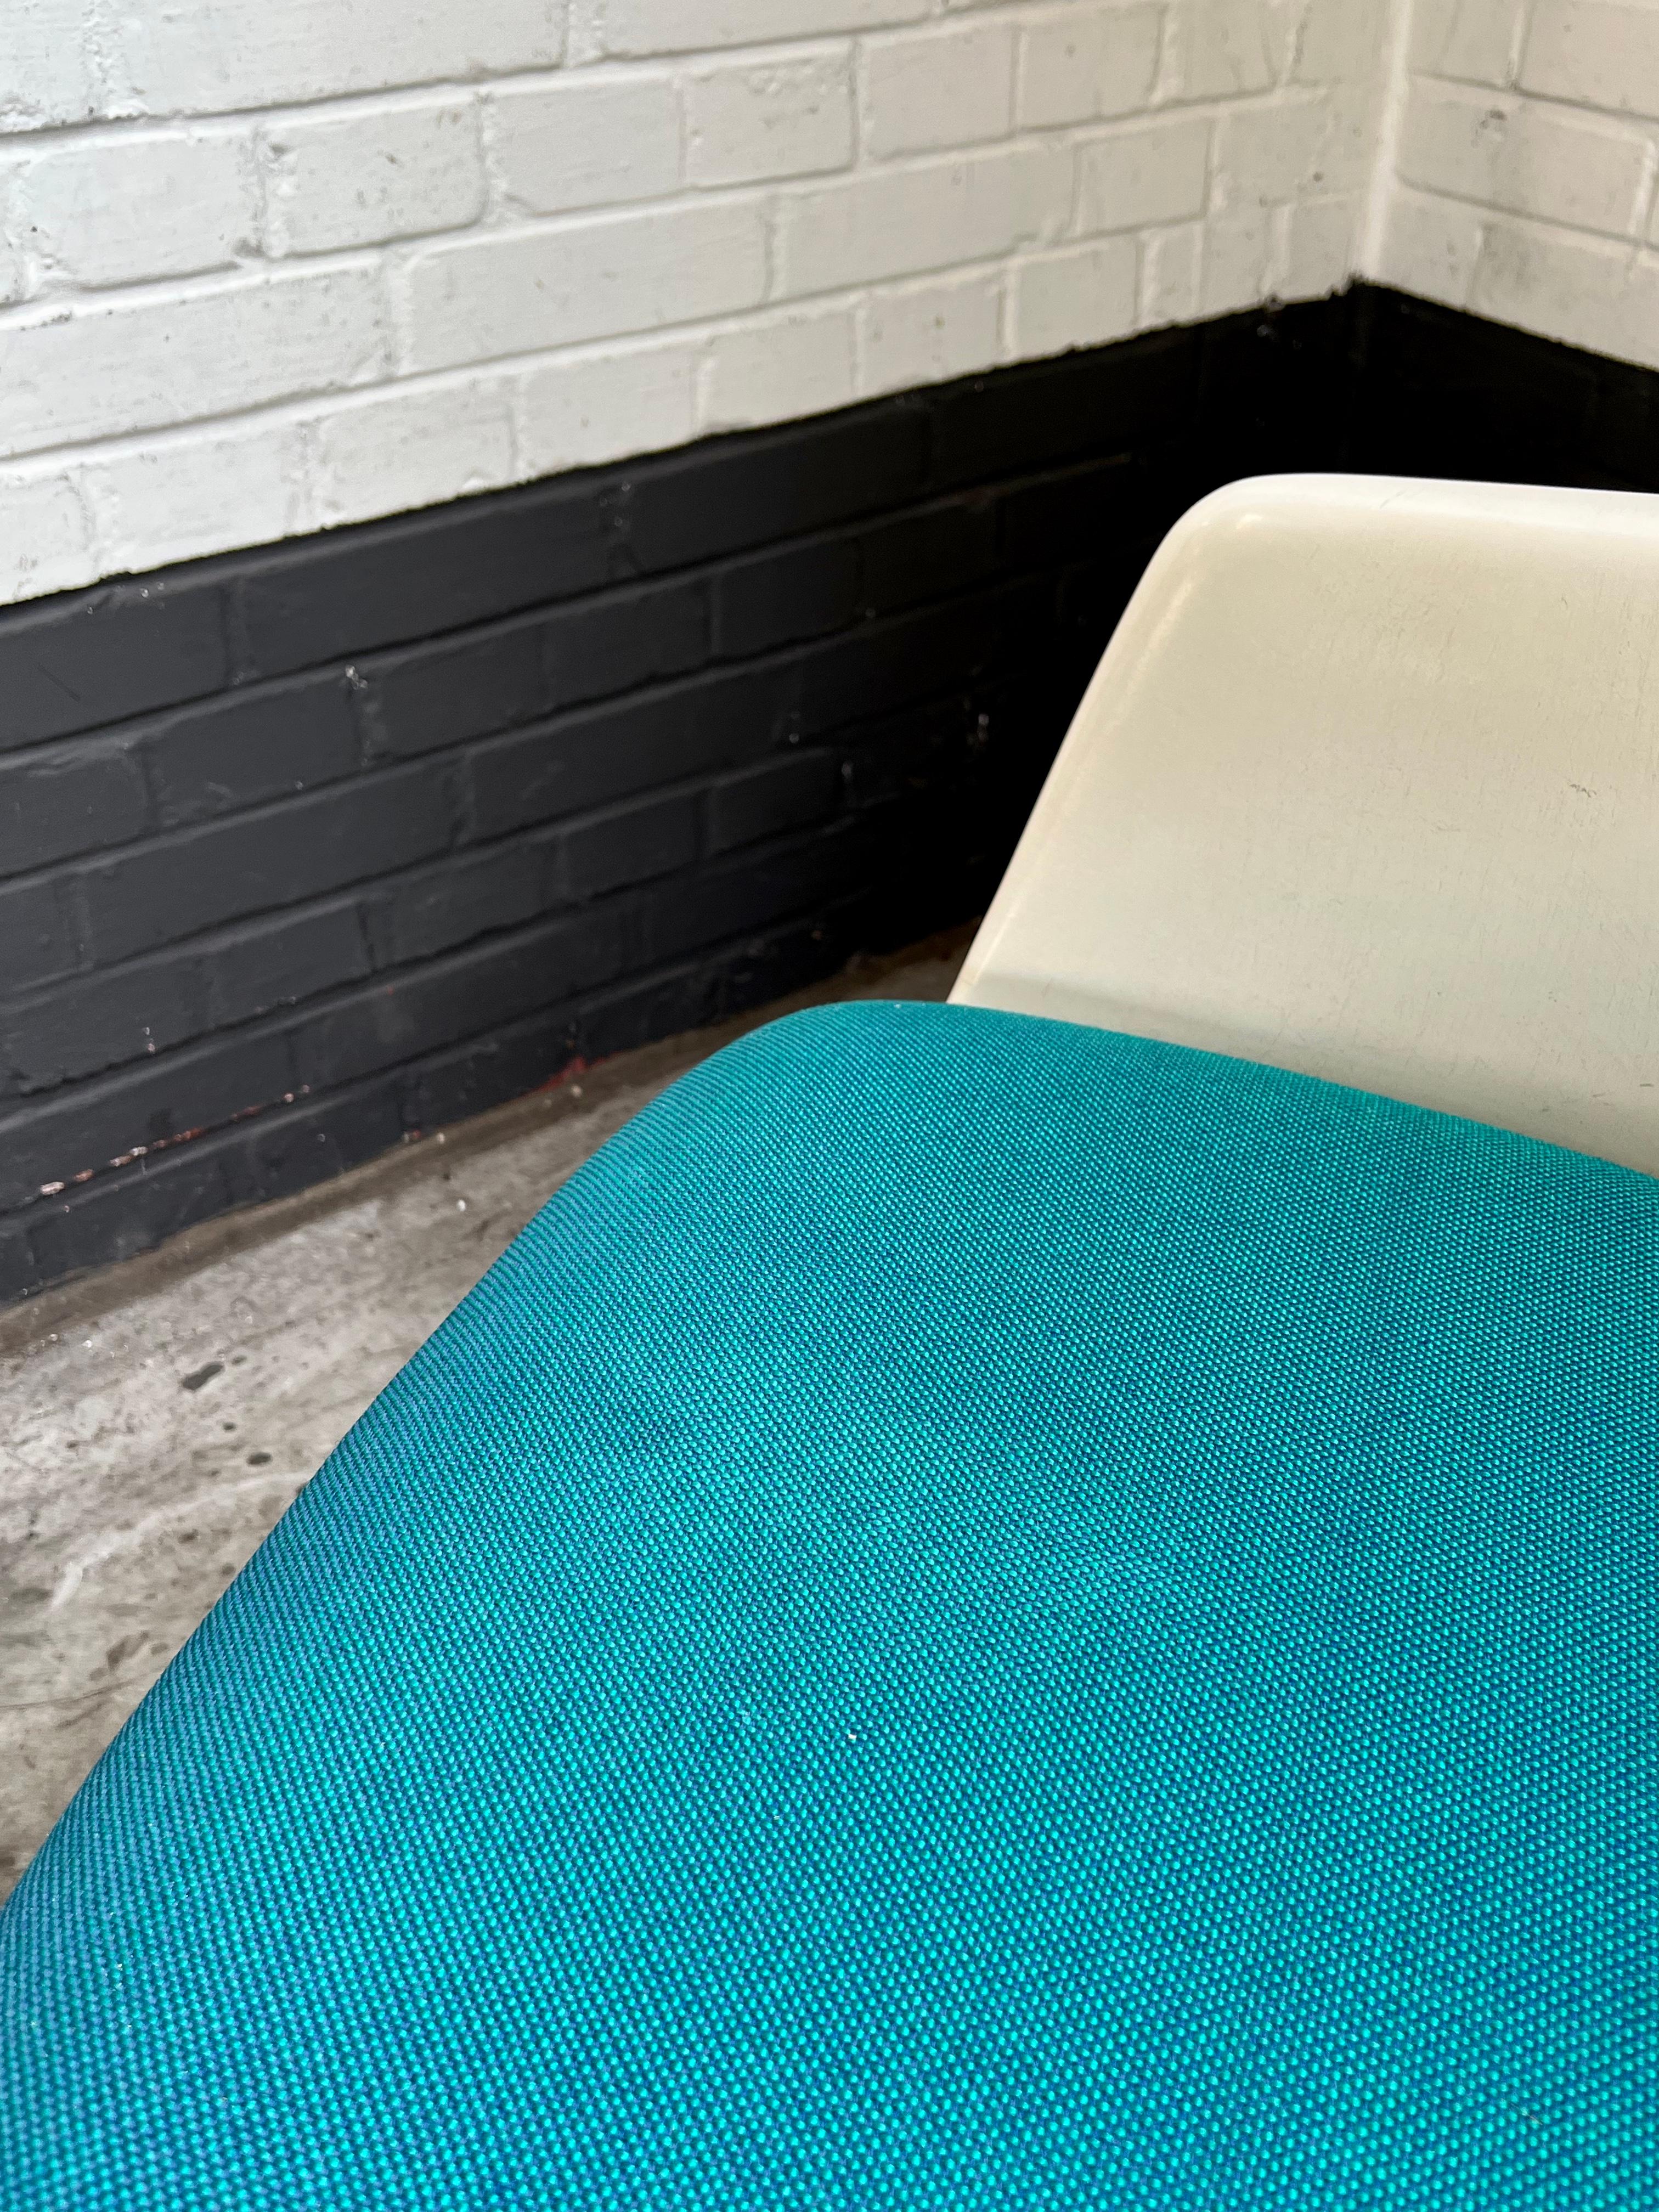 Ikonischer Stuhl des englischen Designers Maurice Burke, der in den sechziger Jahren von Arkana hergestellt wurde.
 
Schön geformter weißer Rahmen auf einem drehbaren Metallgestell mit gekreuzten Beinen. Lebendige blaue Polsterung.